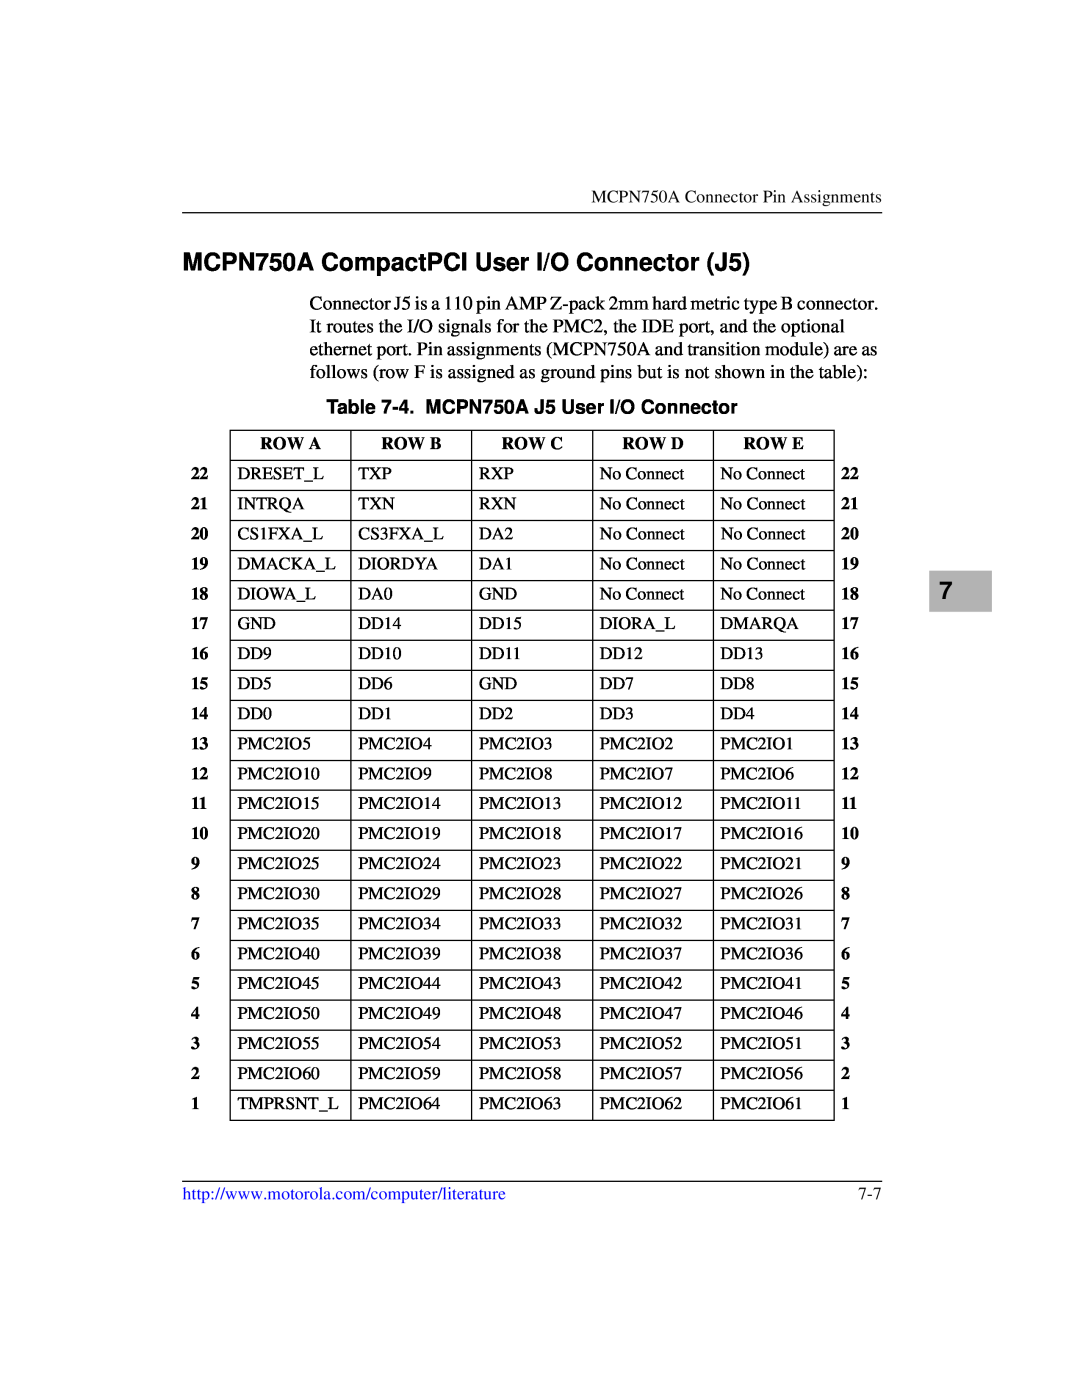 Motorola IH5 manual MCPN750A CompactPCI User I/O Connector J5, 4. MCPN750A J5 User I/O Connector 